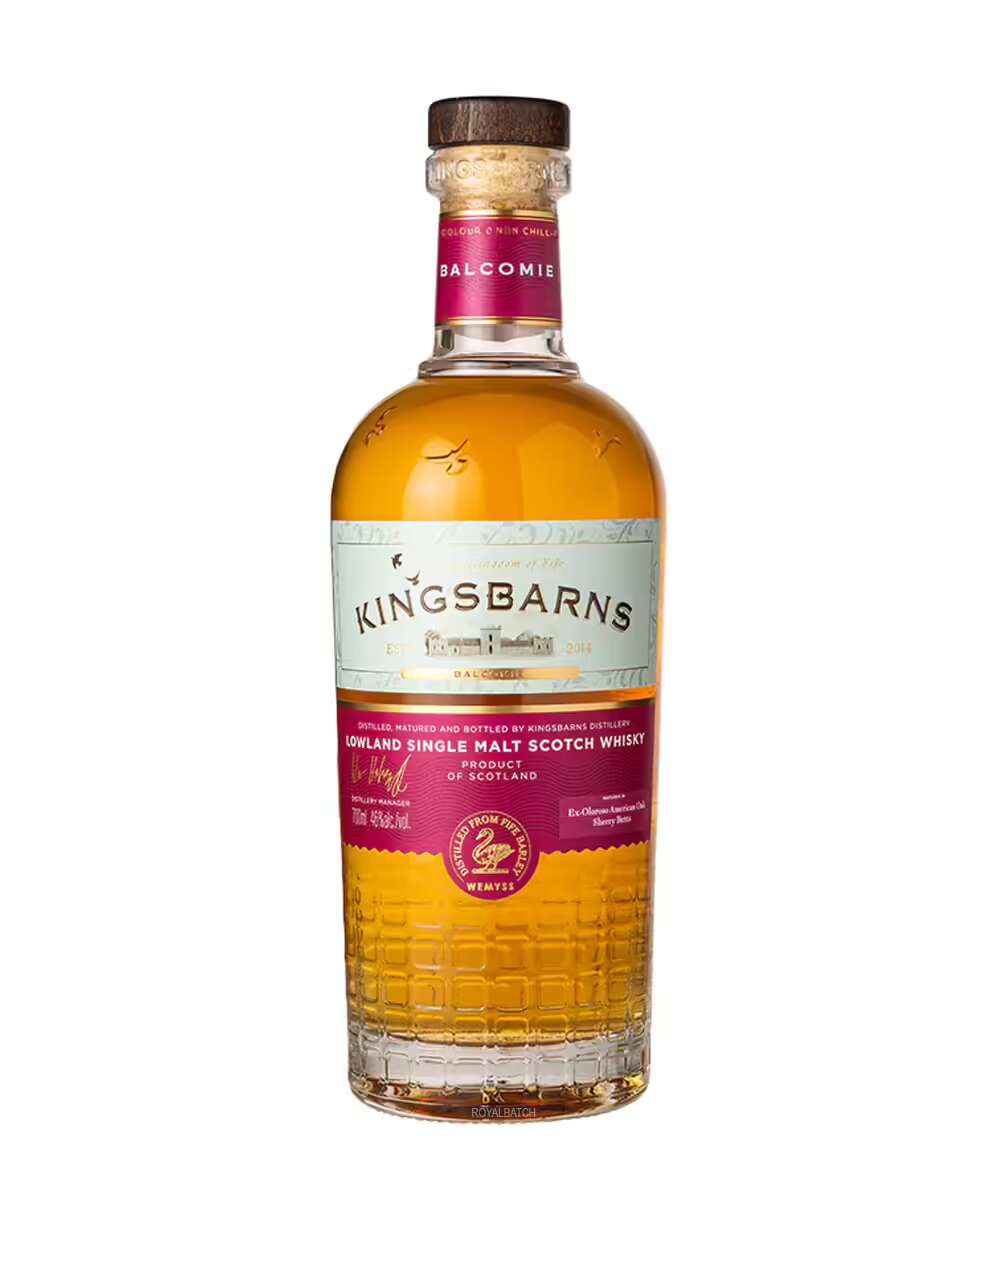 KingsBarns Balcomie Lowland Single Malt Scotch Whiskey